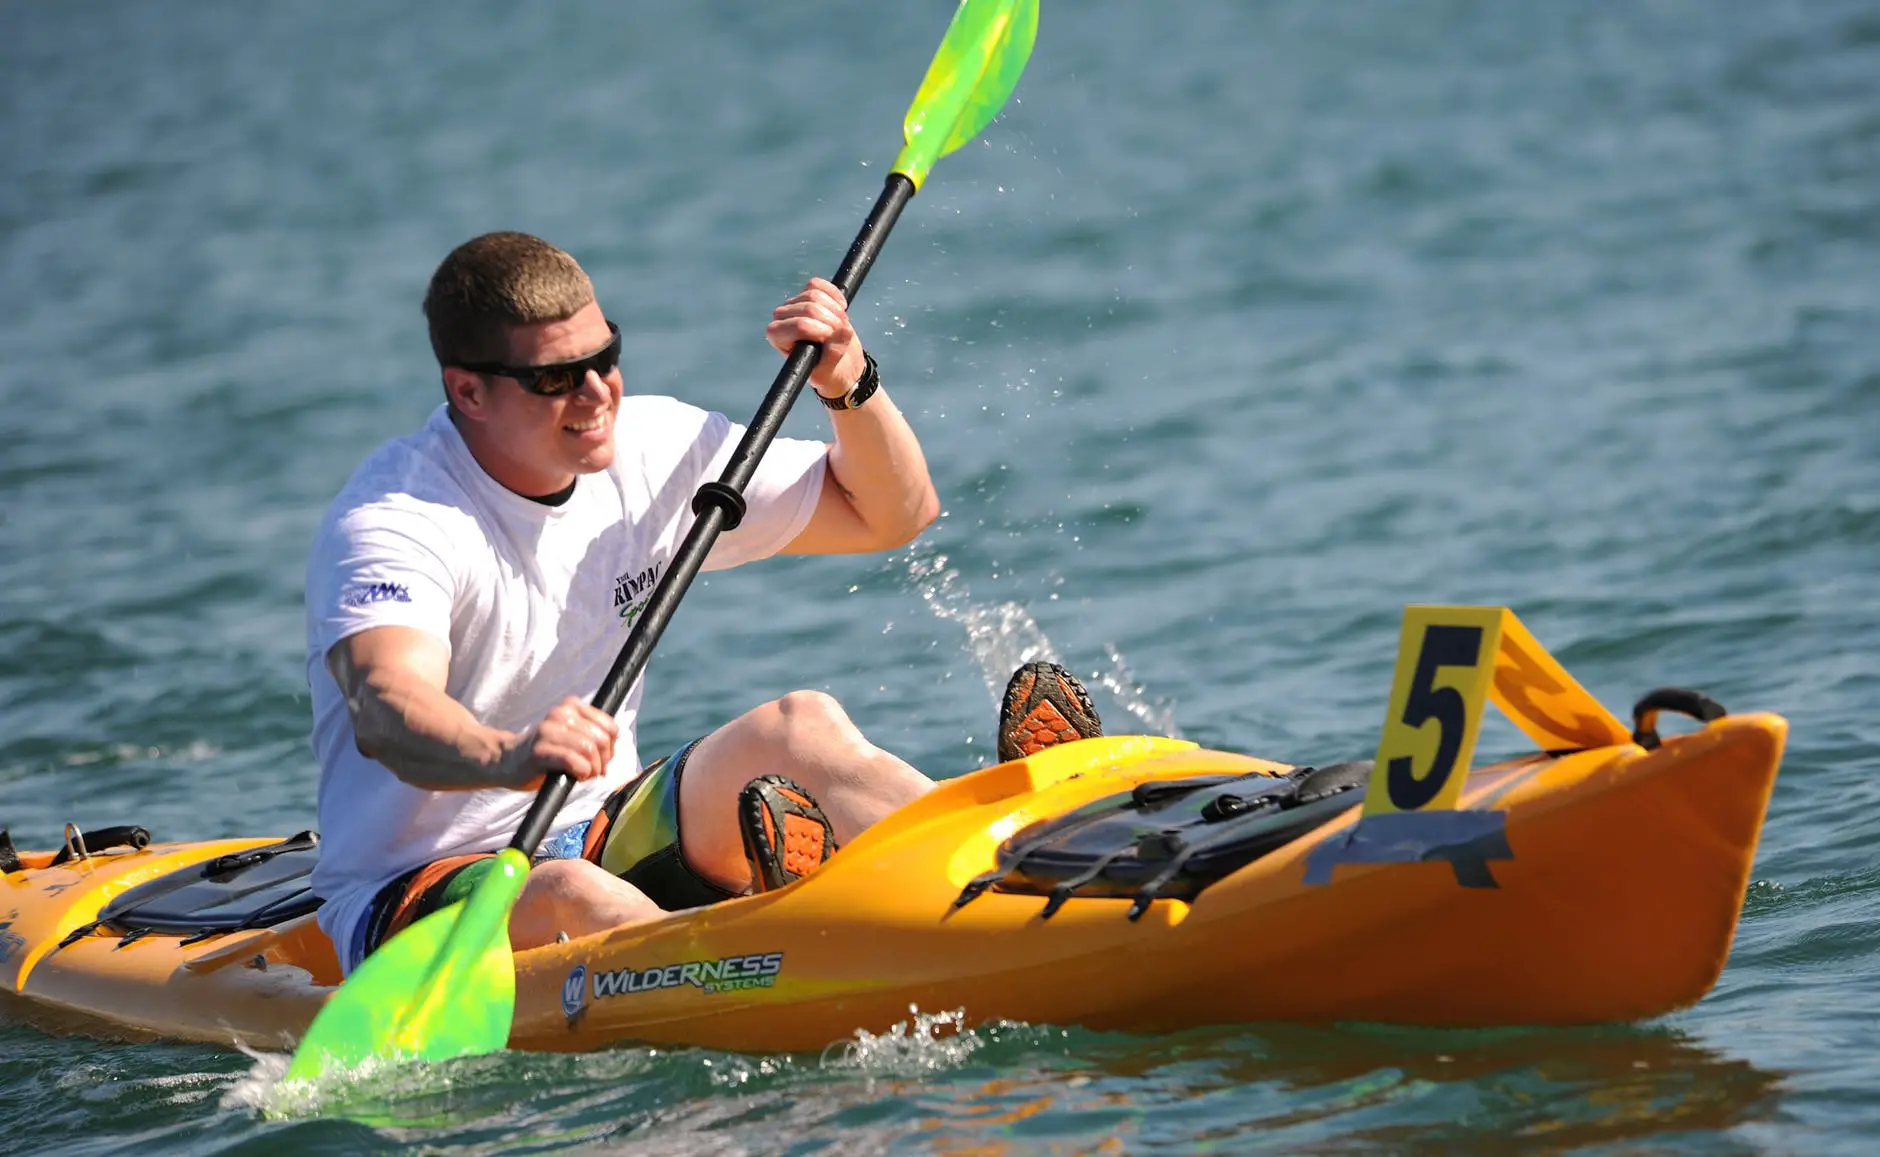 smiling man in white crew neck t shirt wearing sunglasses paddling on yellow kayak during daytime